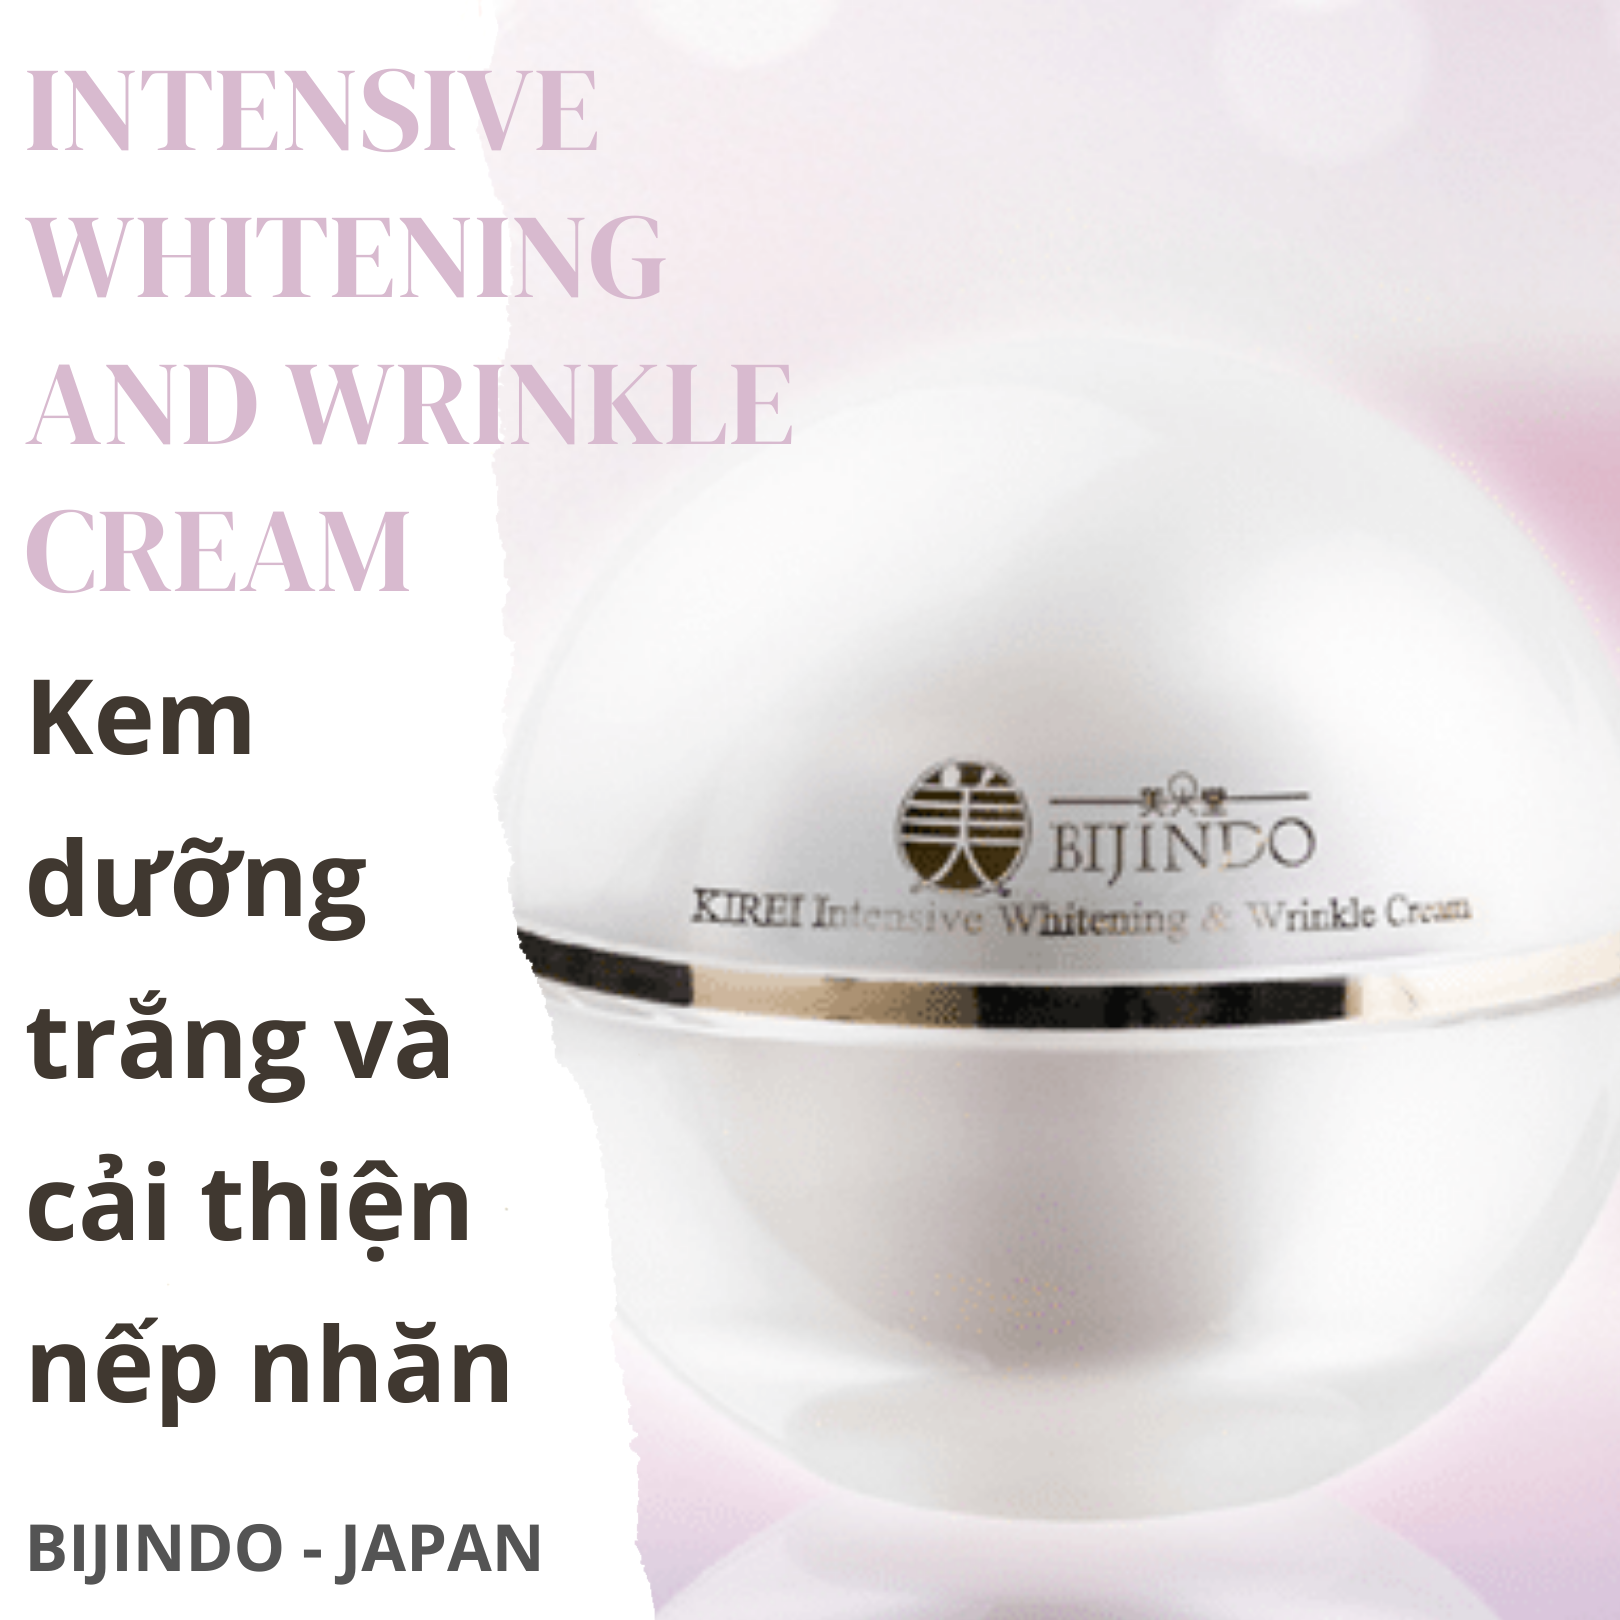 BIJINDO KIREI Intensive Whitening And Wrinkle Cream